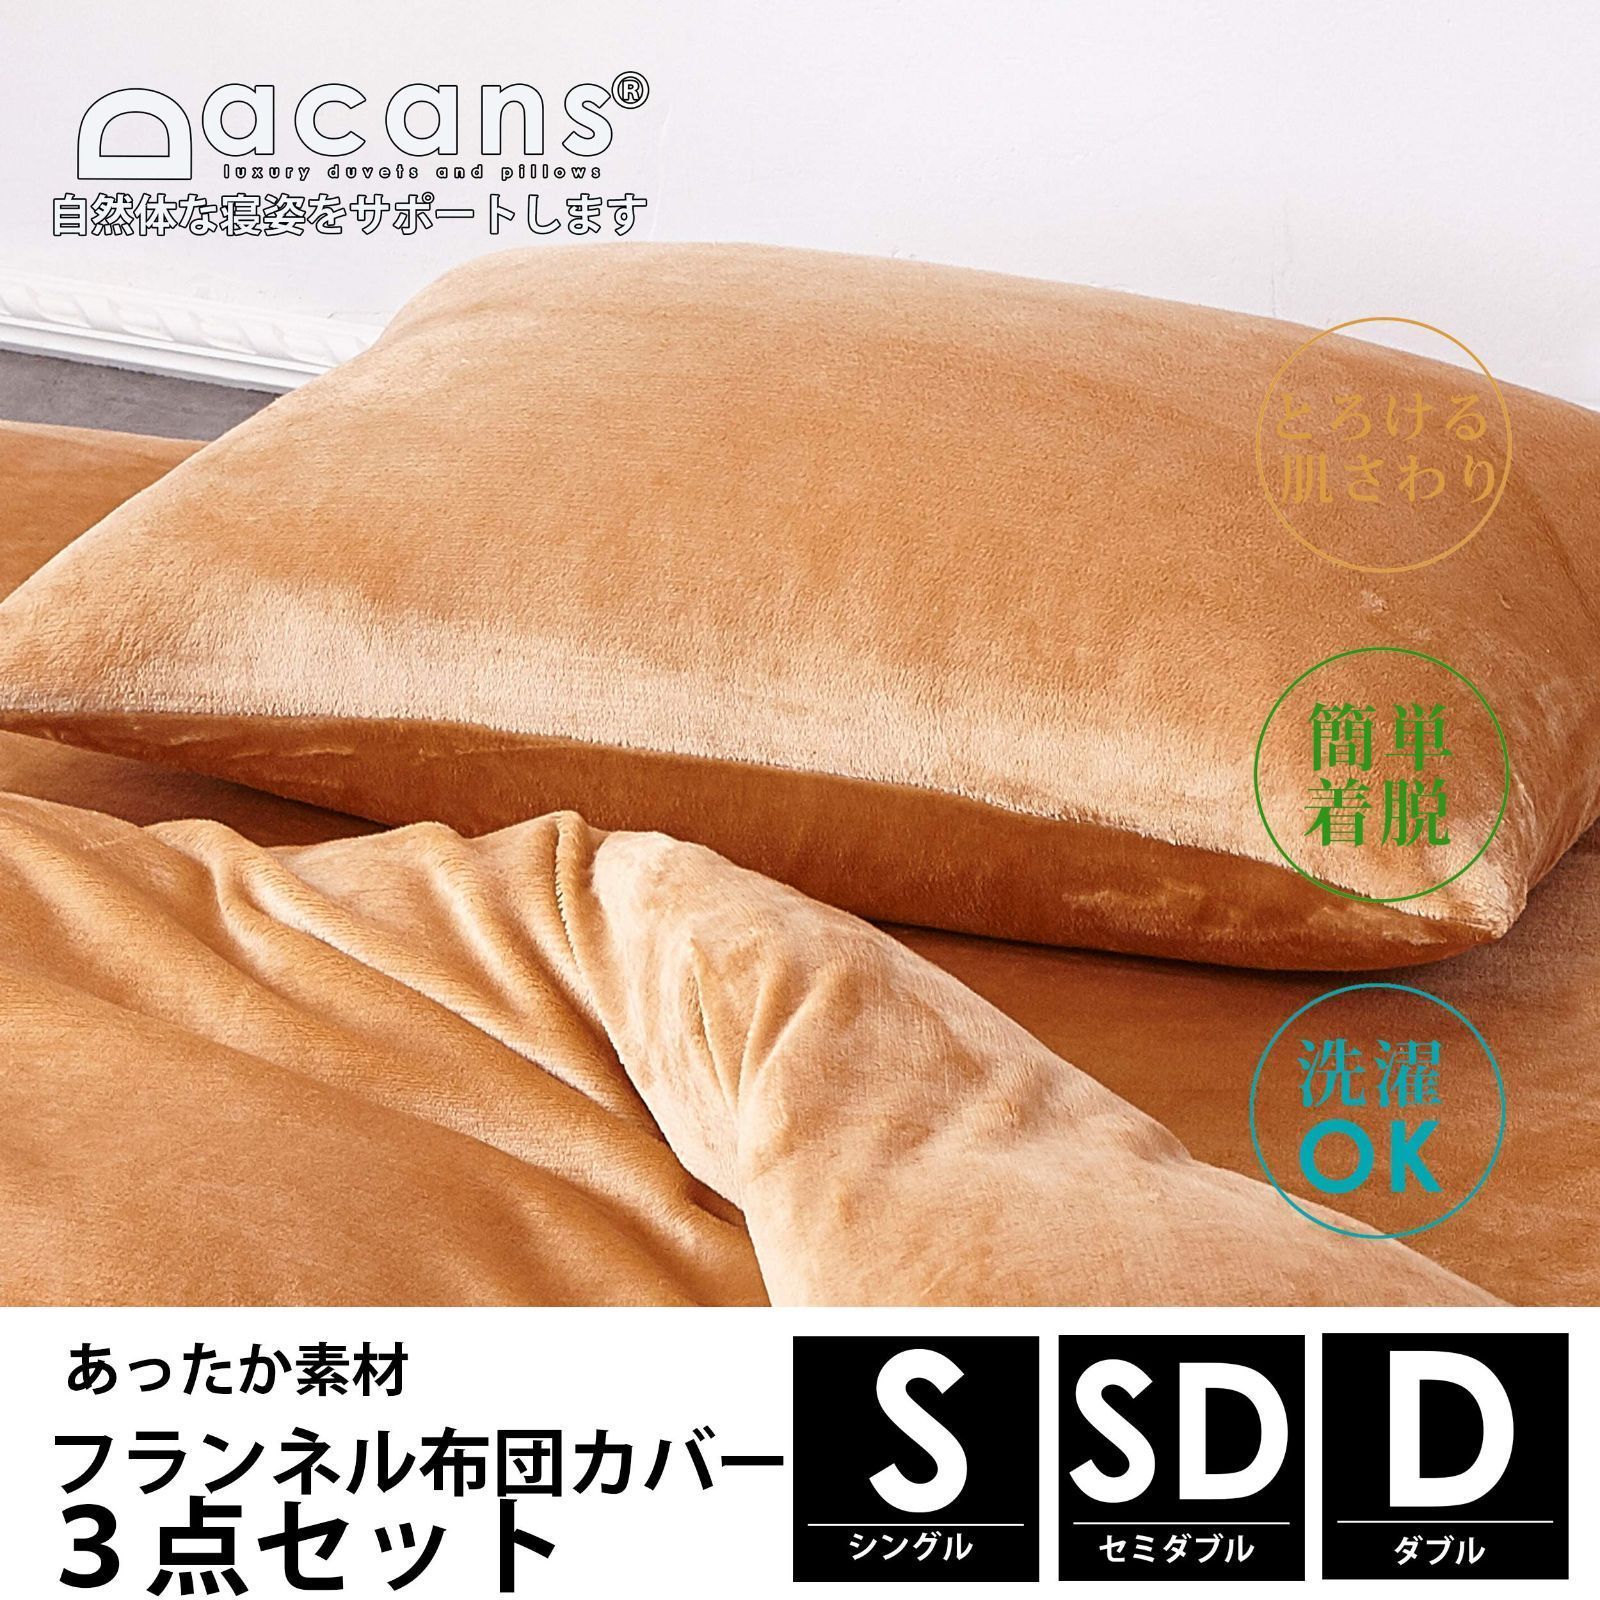 特売】DACANS(ダカンス) 布団カバー 3点セット 寝具カバーセット 枕